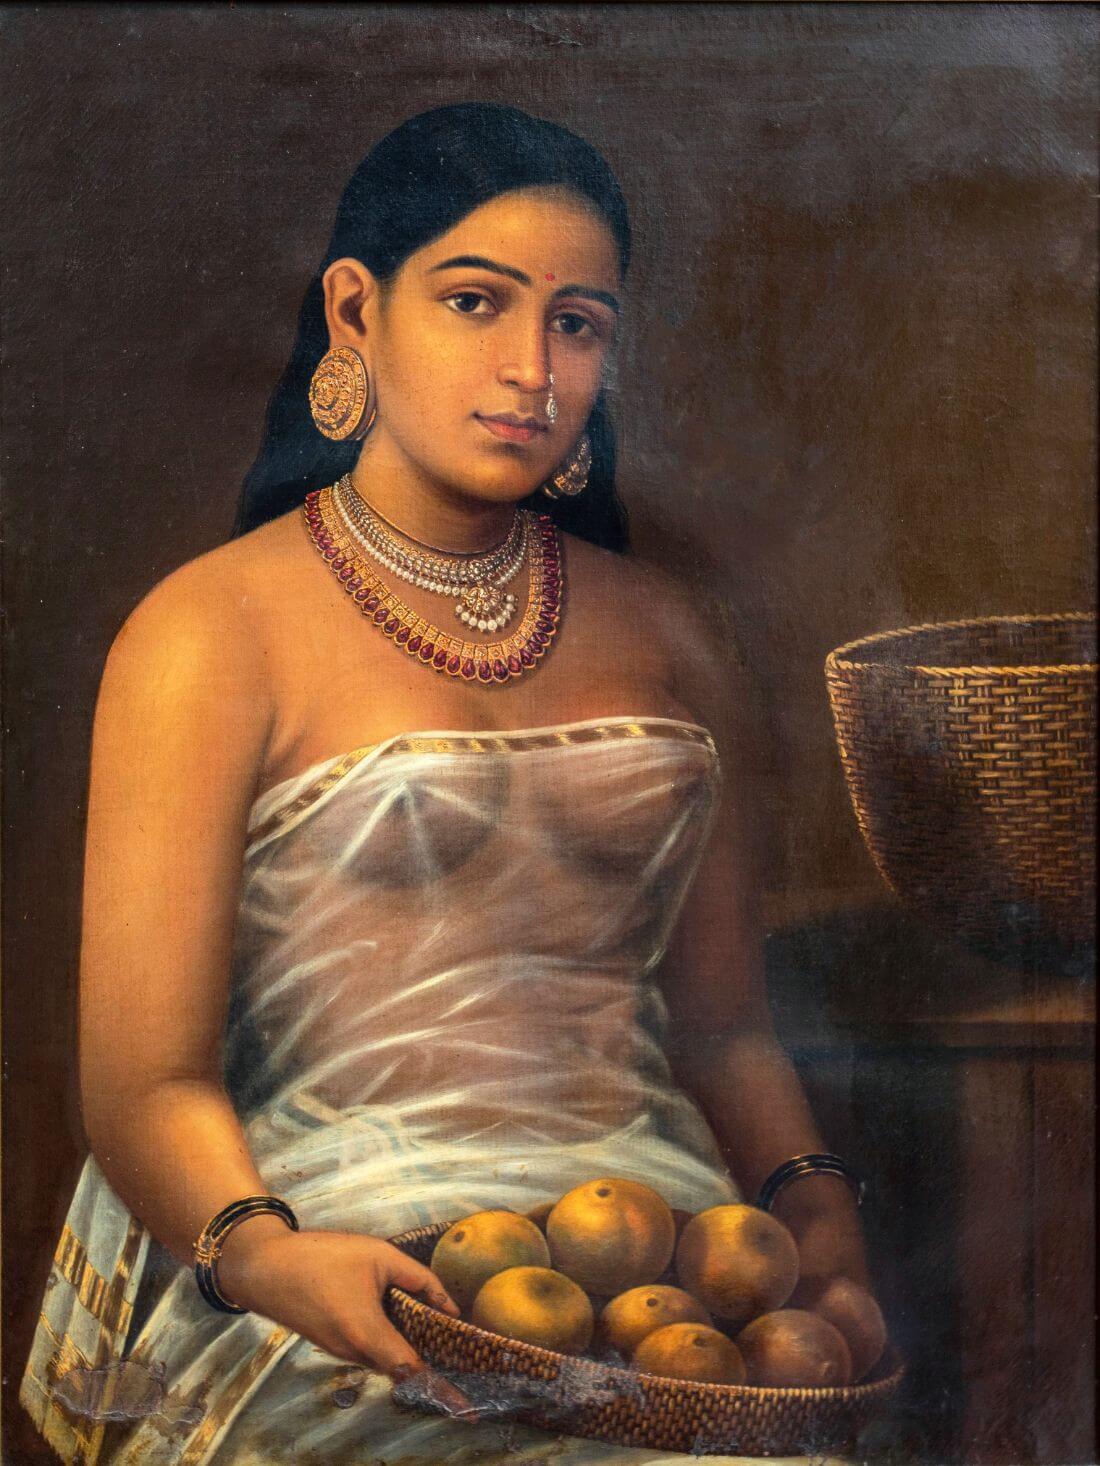 Kerala Lady With Fruit - Raja Ravi Varma - Indian Art Masterpiece ...